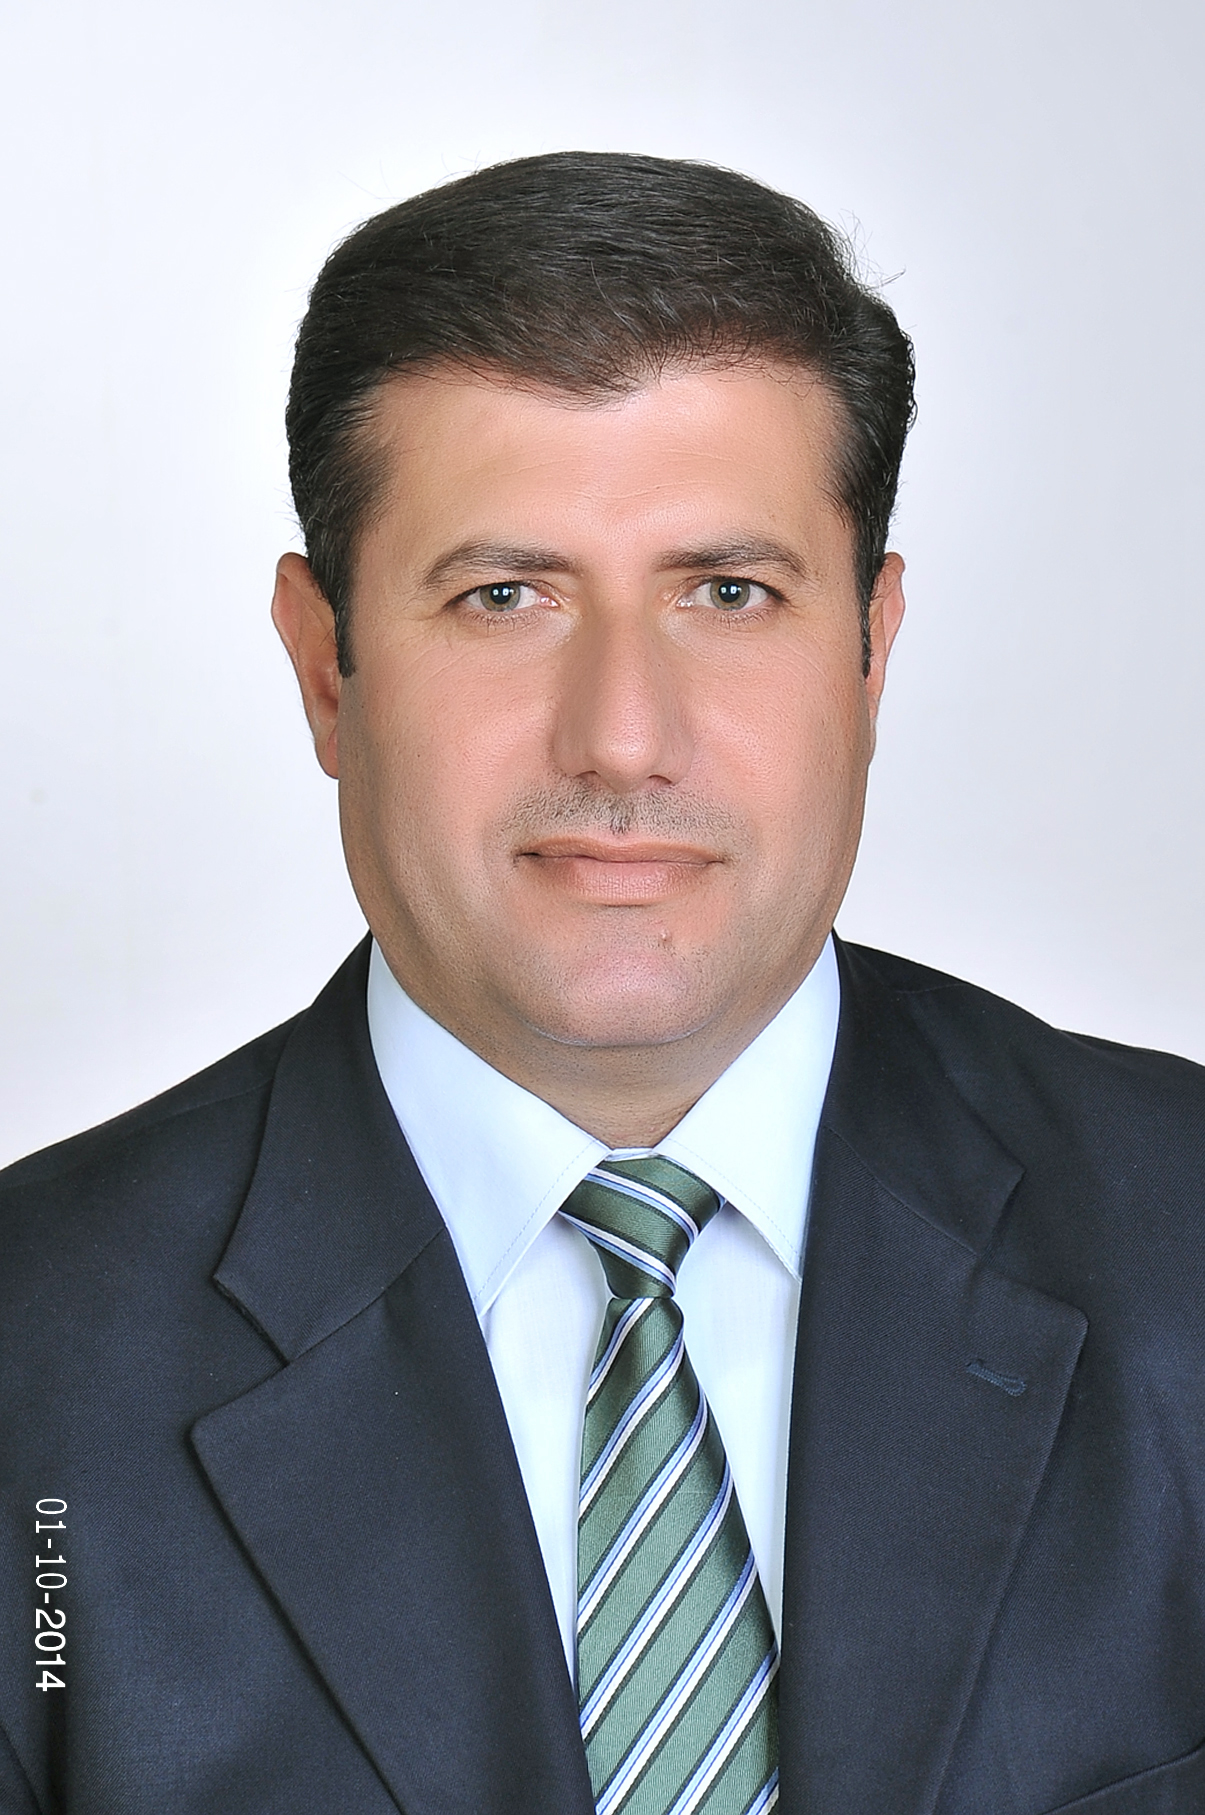 Ziad Al-Dwairi